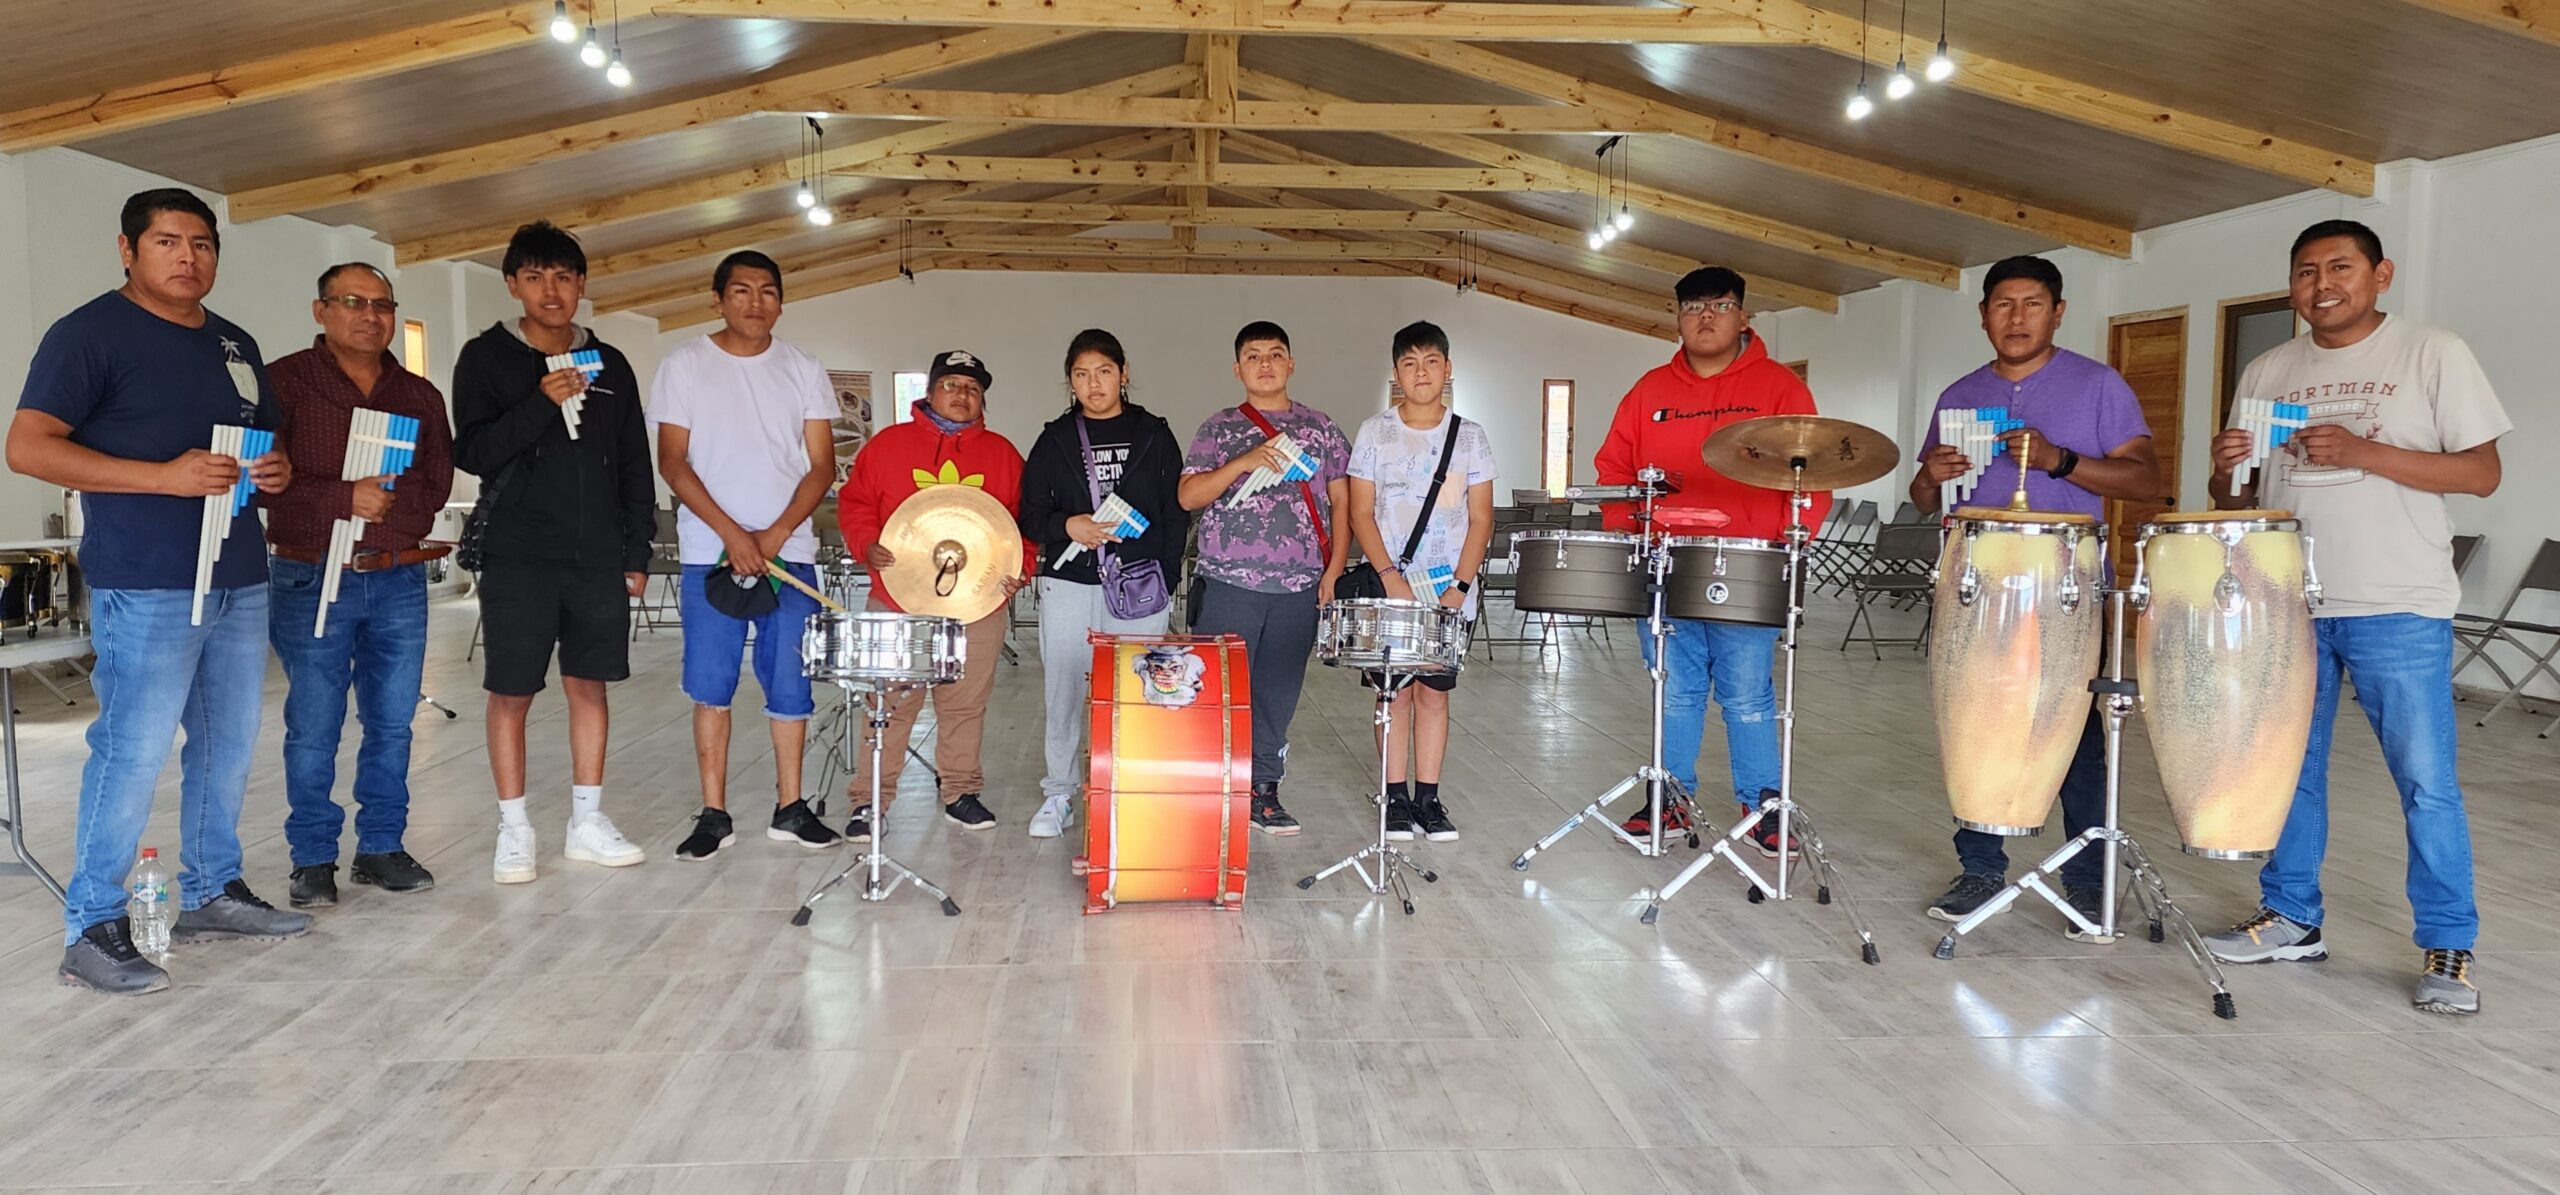 Voluntariado de El Abra permite rescatar música y cultura andina en Chiu Chiu